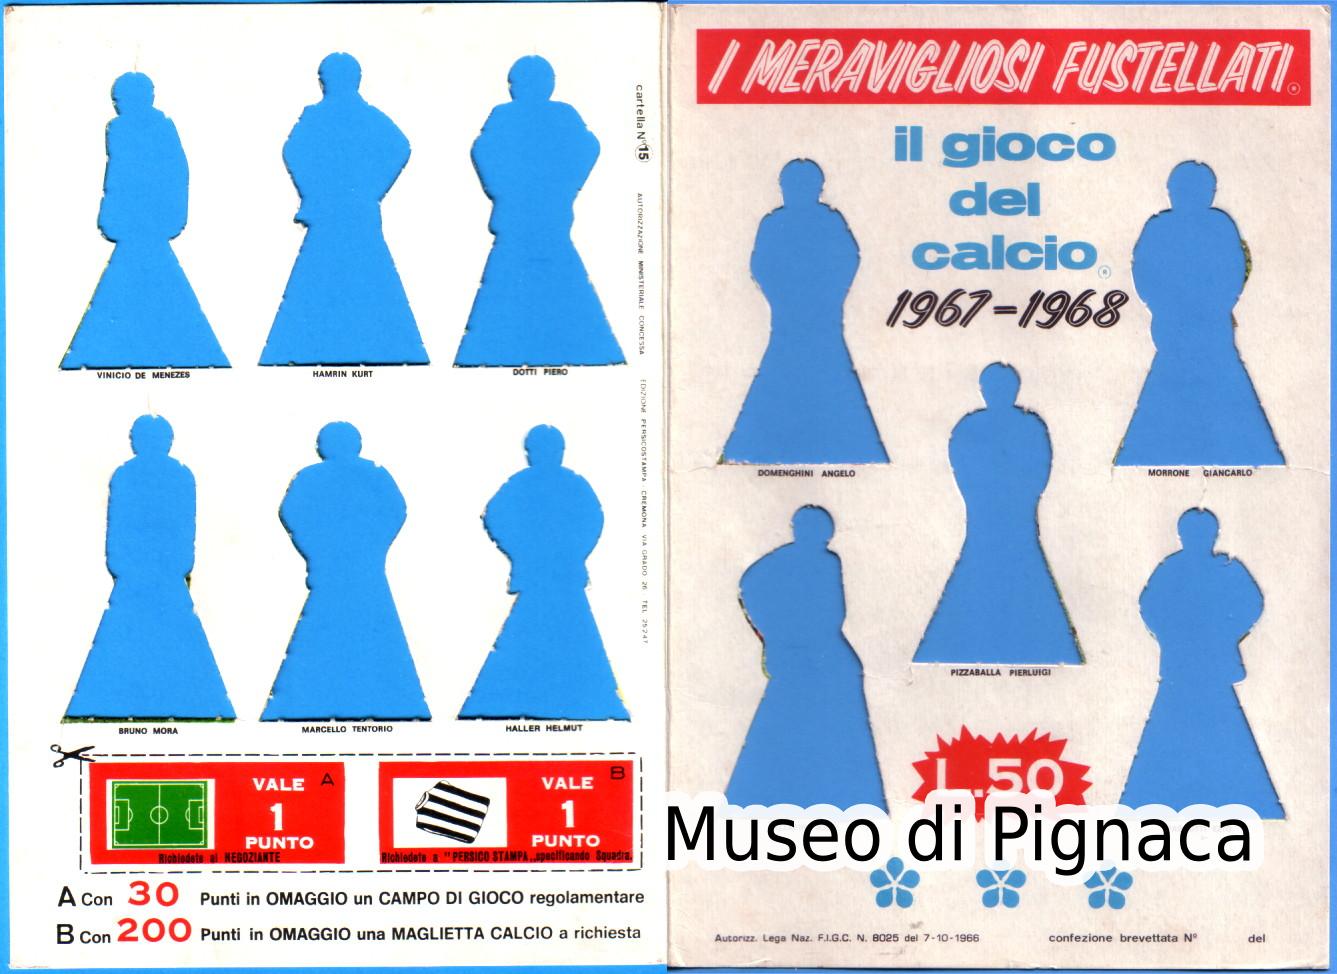 PERSICOSTAMPA (Cremona) - 1967-68 I migliori fustellati d'Italia - Il Gioco del Calcio